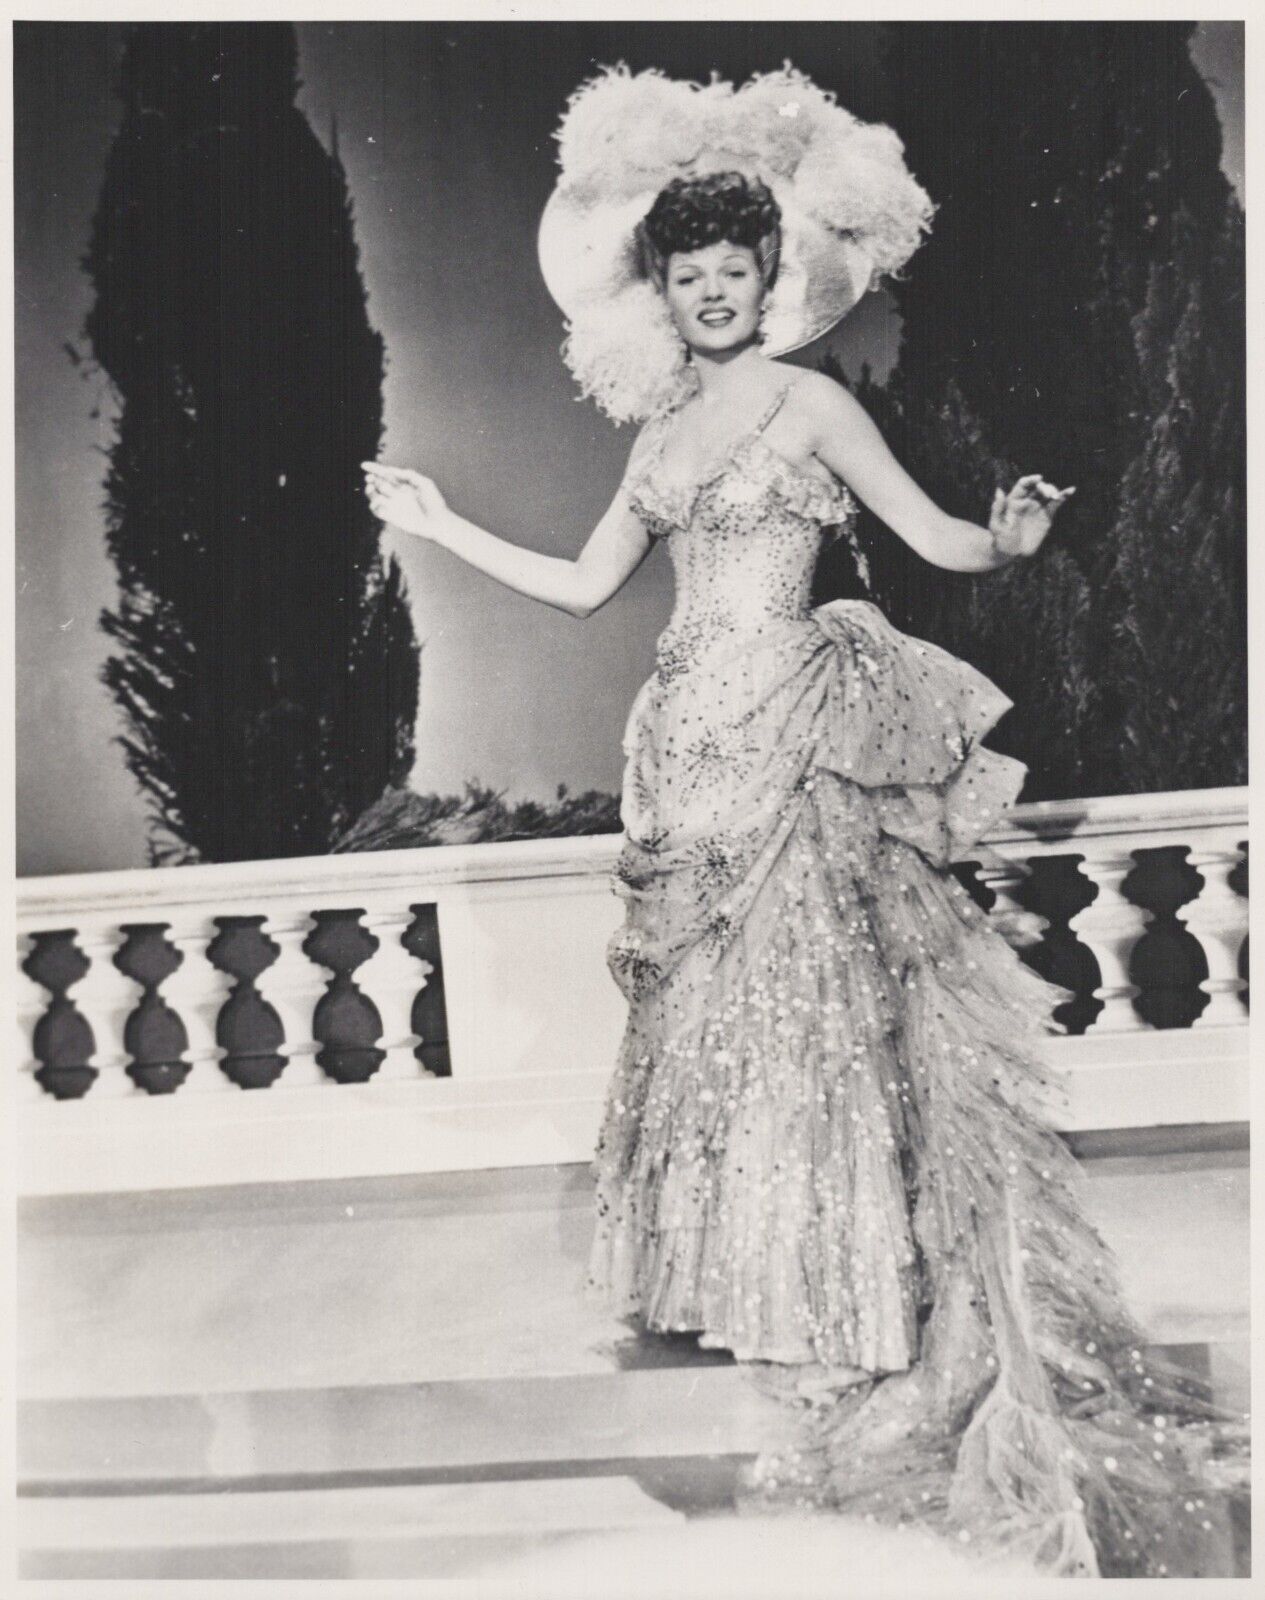 Rita Hayworth (1970s) ❤ Hollywood Beauty - Stylish Glamorous Photo K 396